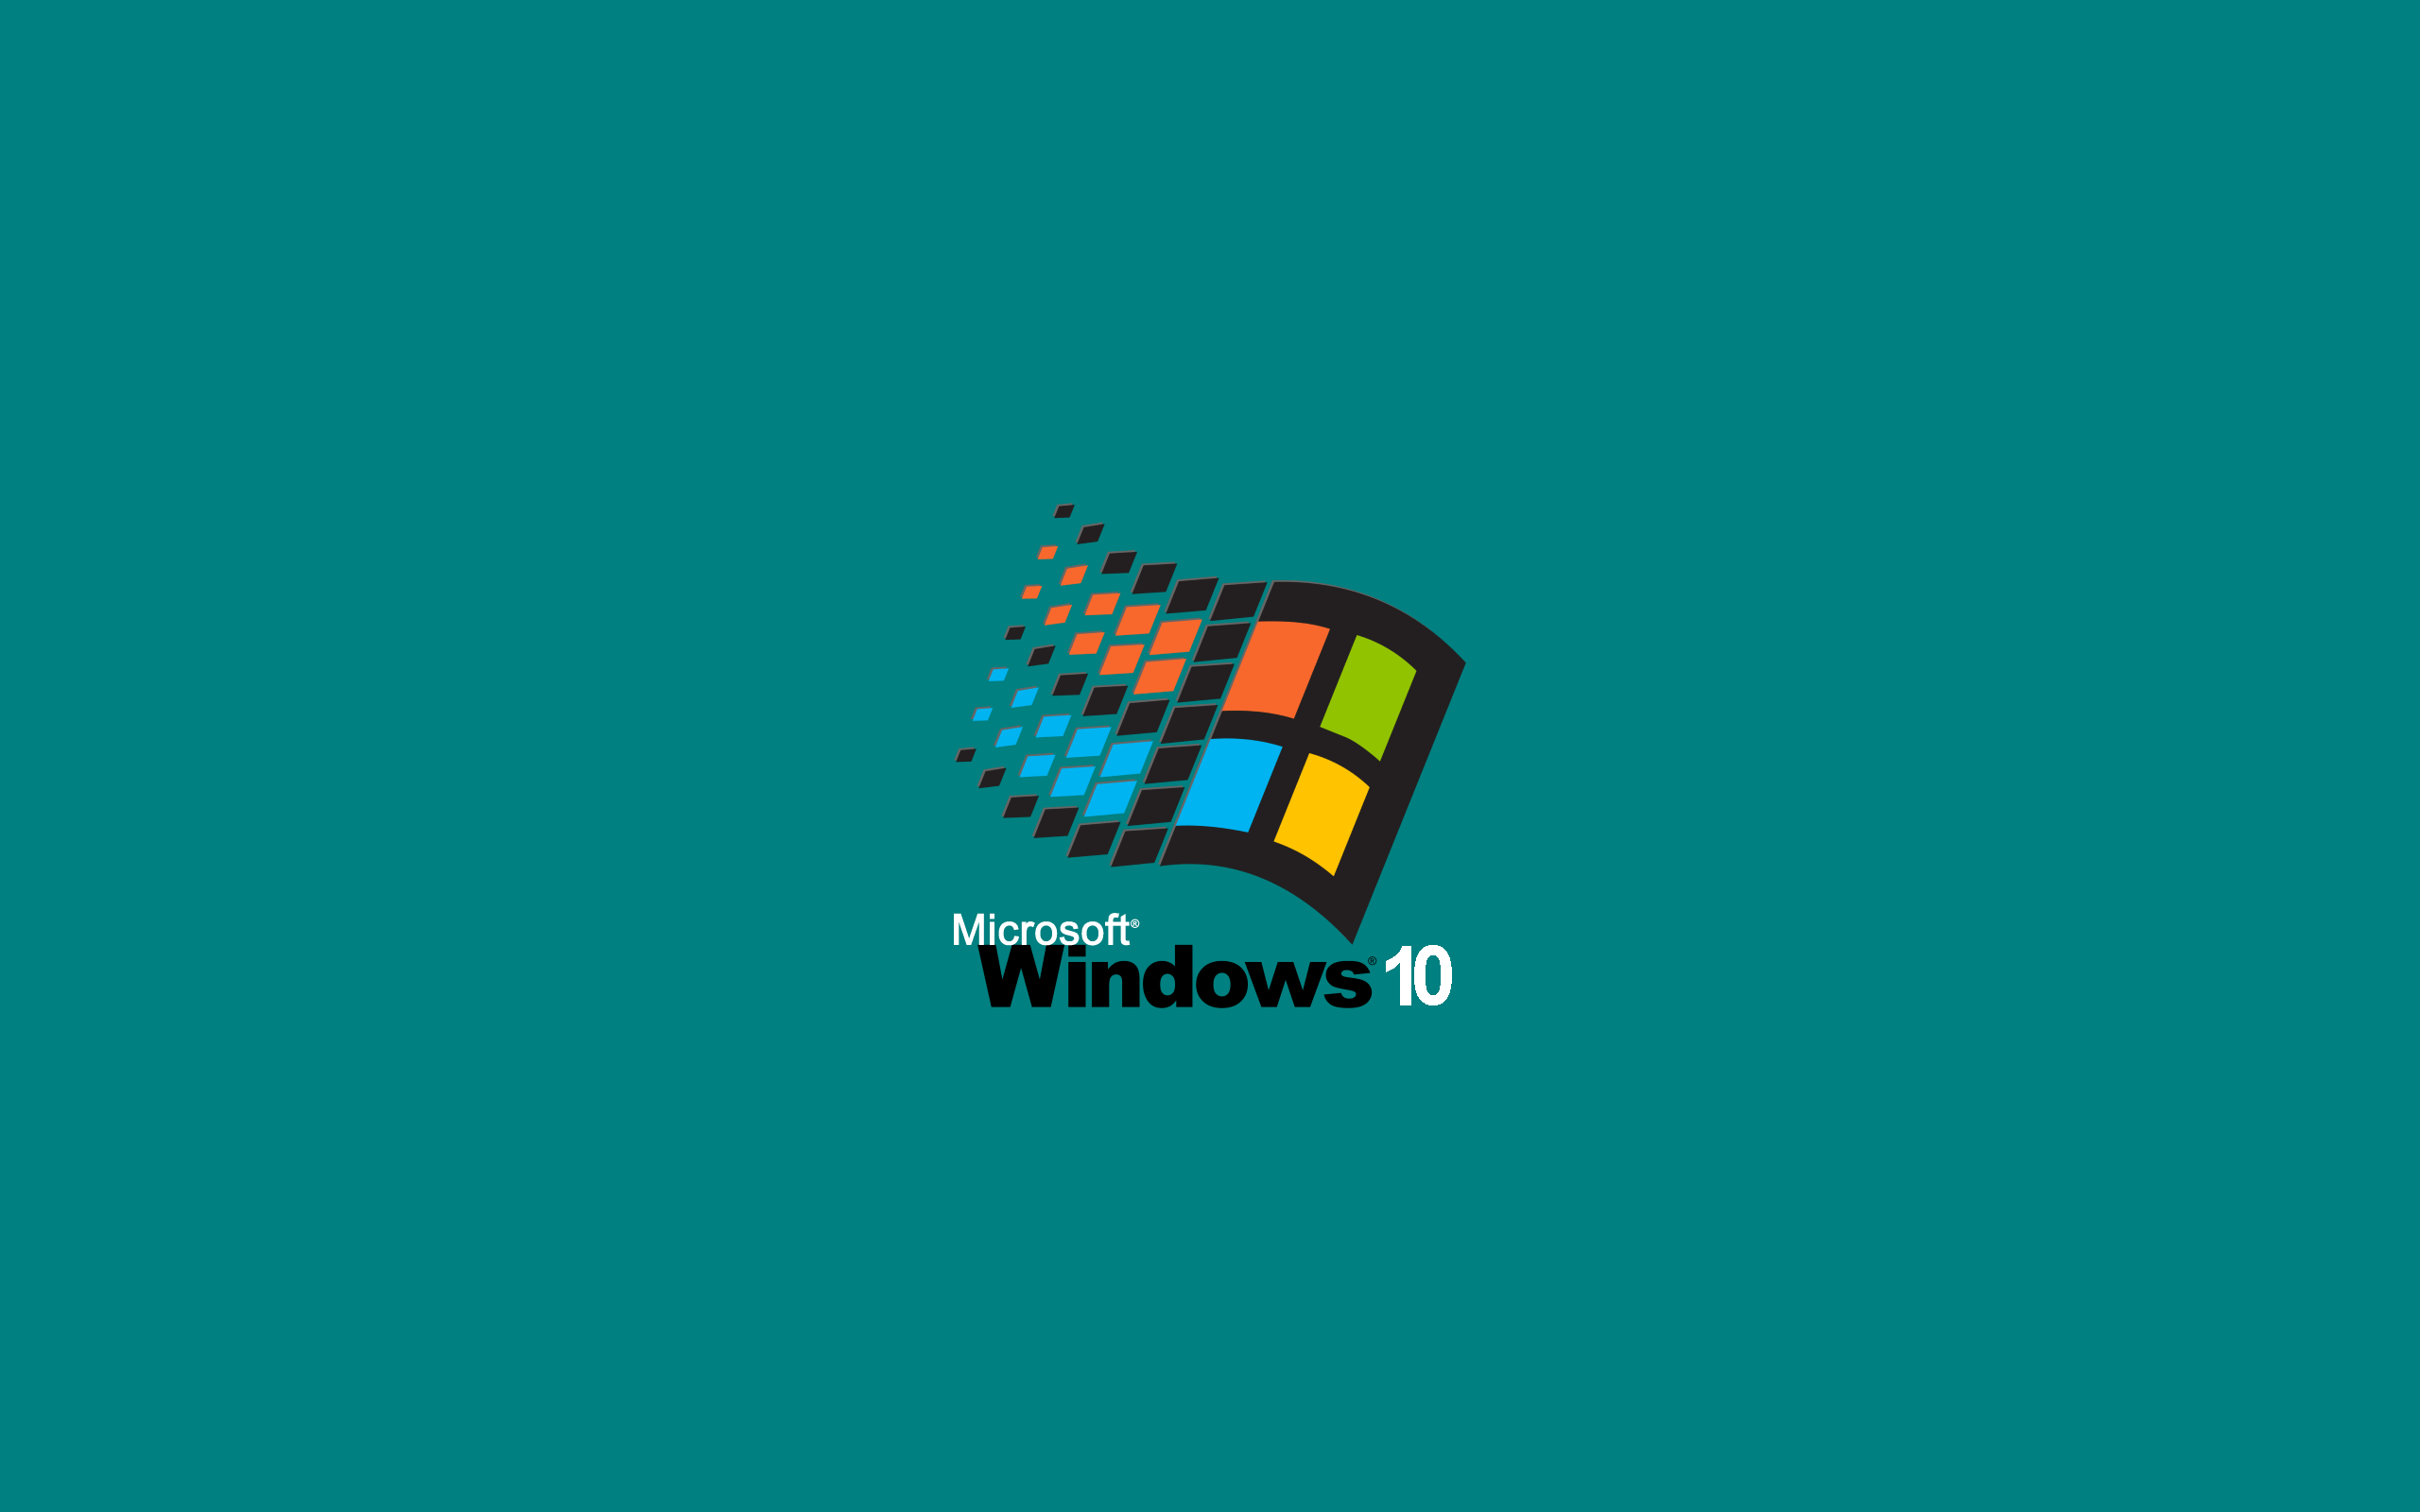 Hình nền màn hình máy tính Windows 95 là vô cùng đặc biệt và lôi cuốn. Khoảnh khắc hồi tưởng về những ngày tháng ấn tượng với Windows sẽ đến với bạn qua những hình ảnh đầy đủ và chân thực. Hãy xem hình ảnh liên quan để khám phá điều này nhé.